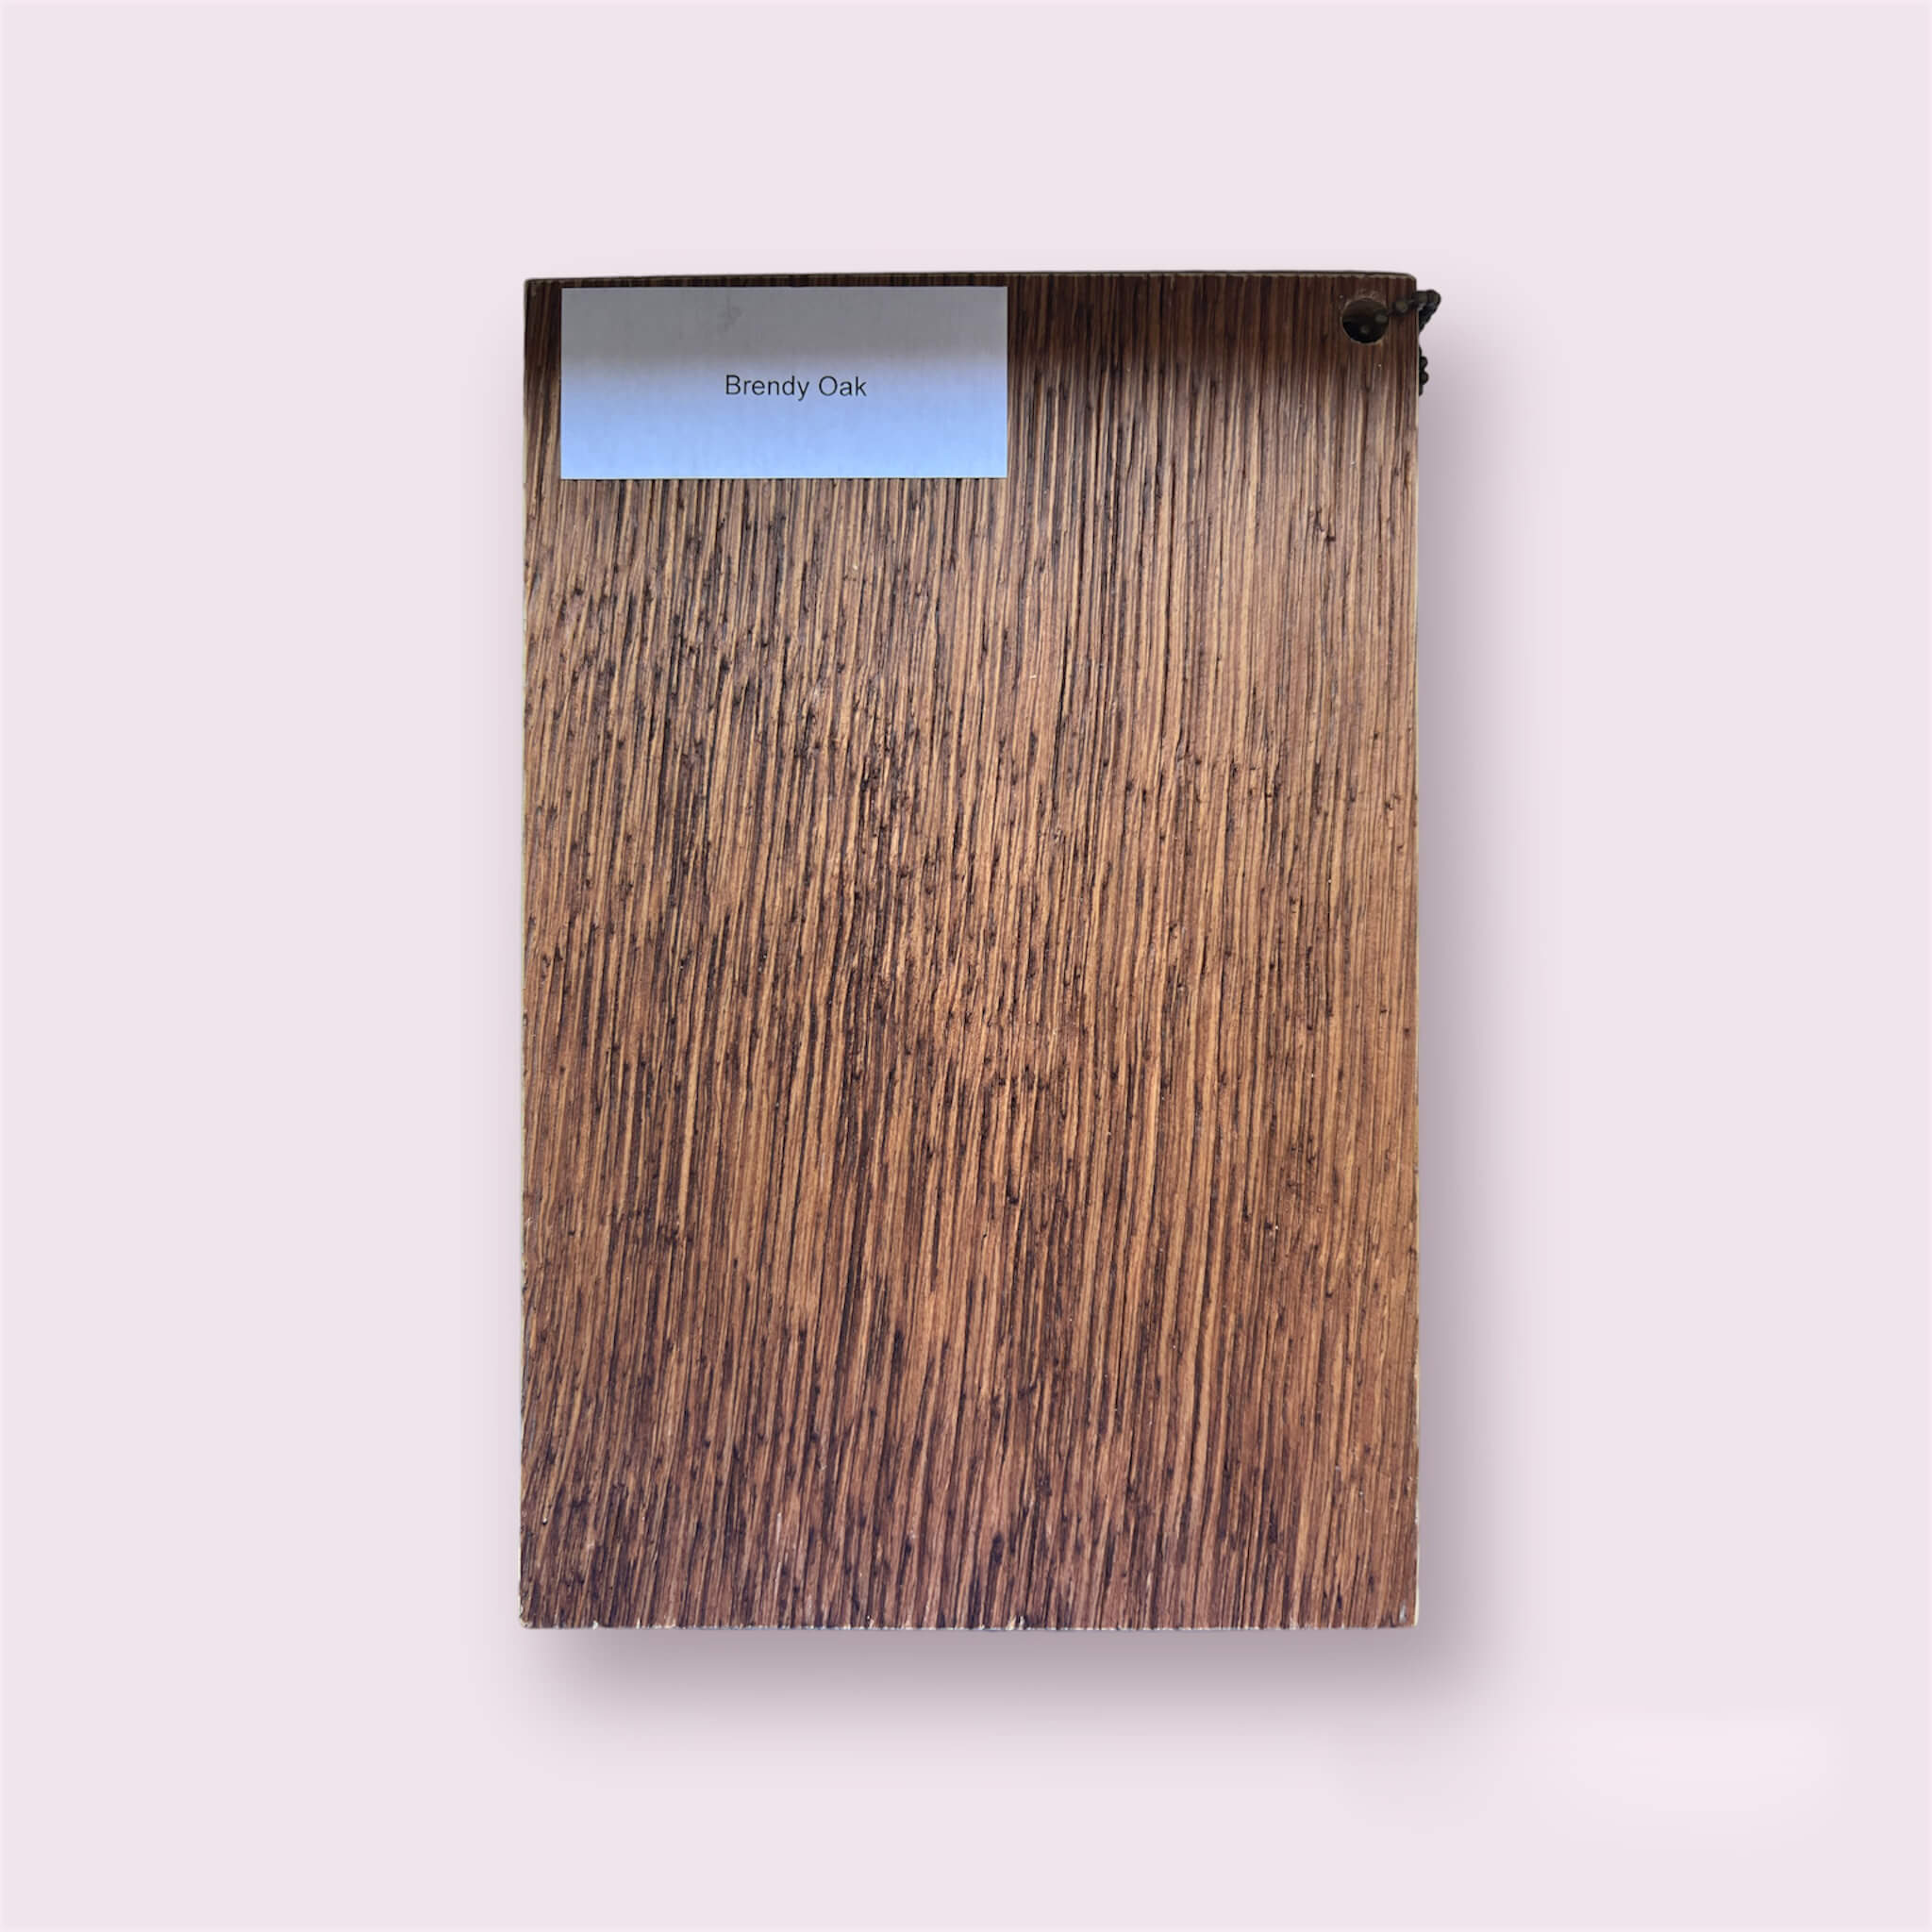 Zdjęcie przedstawia fornir Brendy Oak - cienką warstwę drewna o wyjątkowym wyglądzie w kolorze Brendy Oak